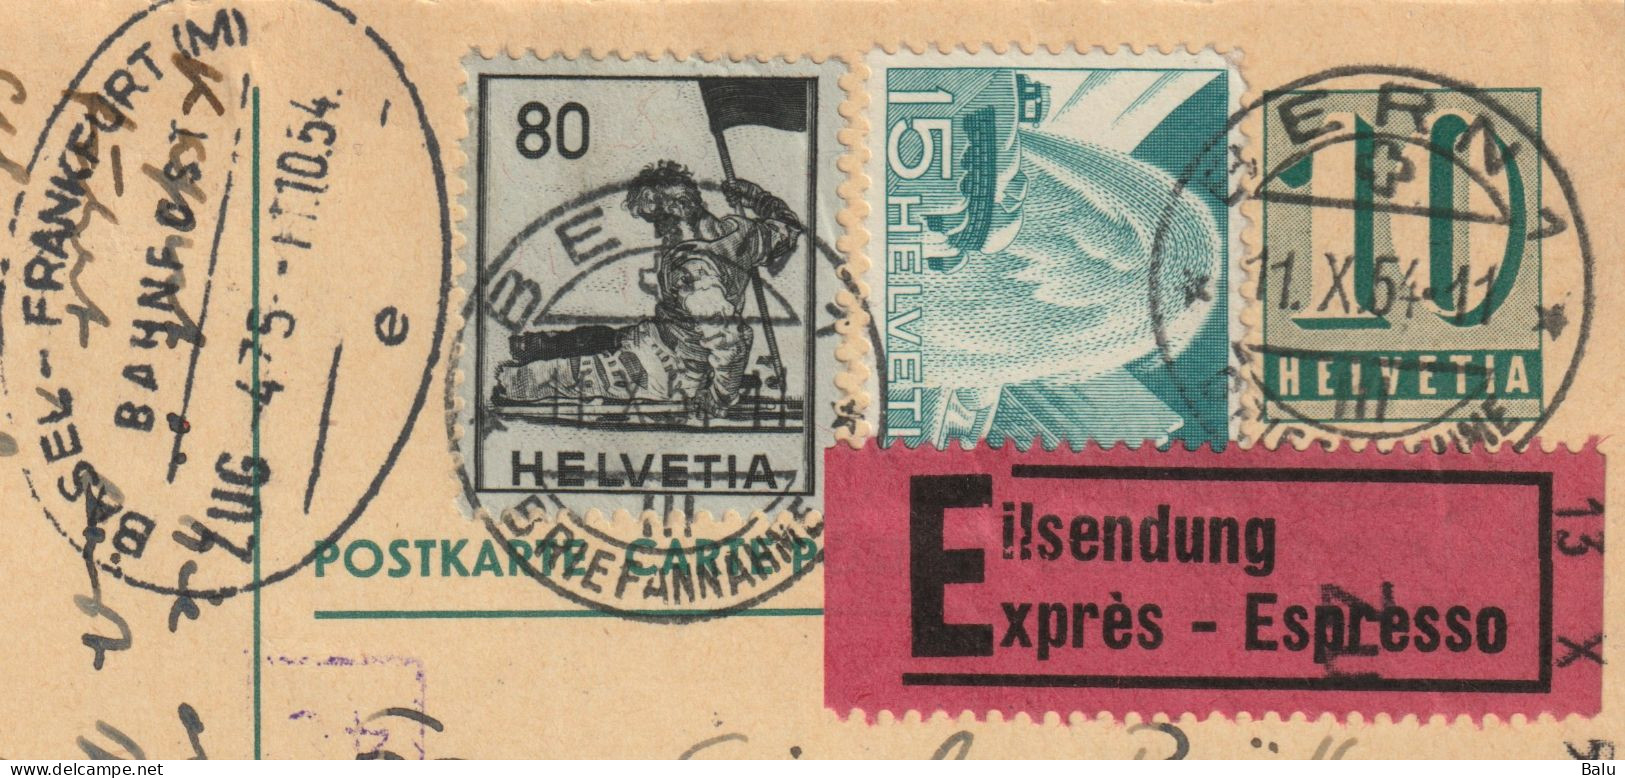 Schweiz 1954 Ganzsache Ziffer 10, Zusatzfrankaturen 80 + 15, Eilzustellung, Bahnpoststempel, Nachgesendet, 2 Scans - Stamped Stationery